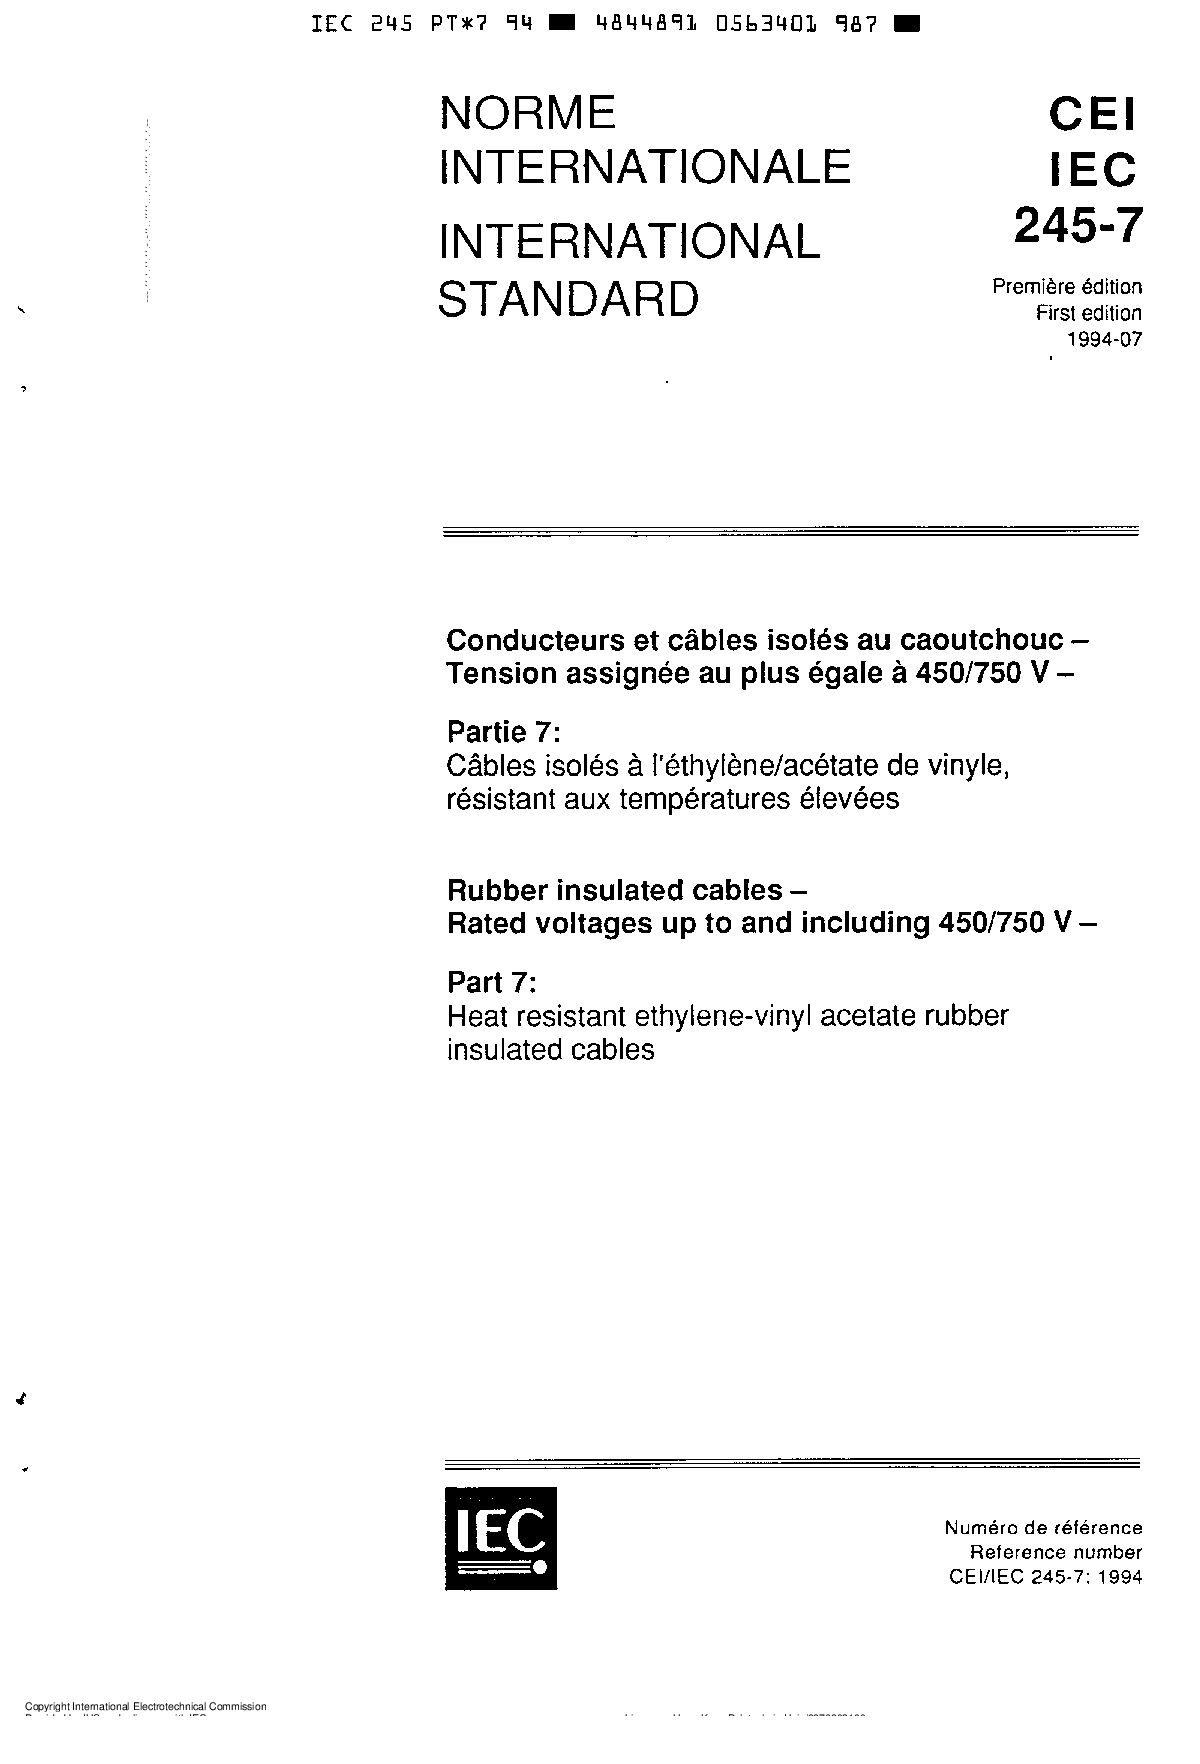 IEC 60245-7:1994封面图